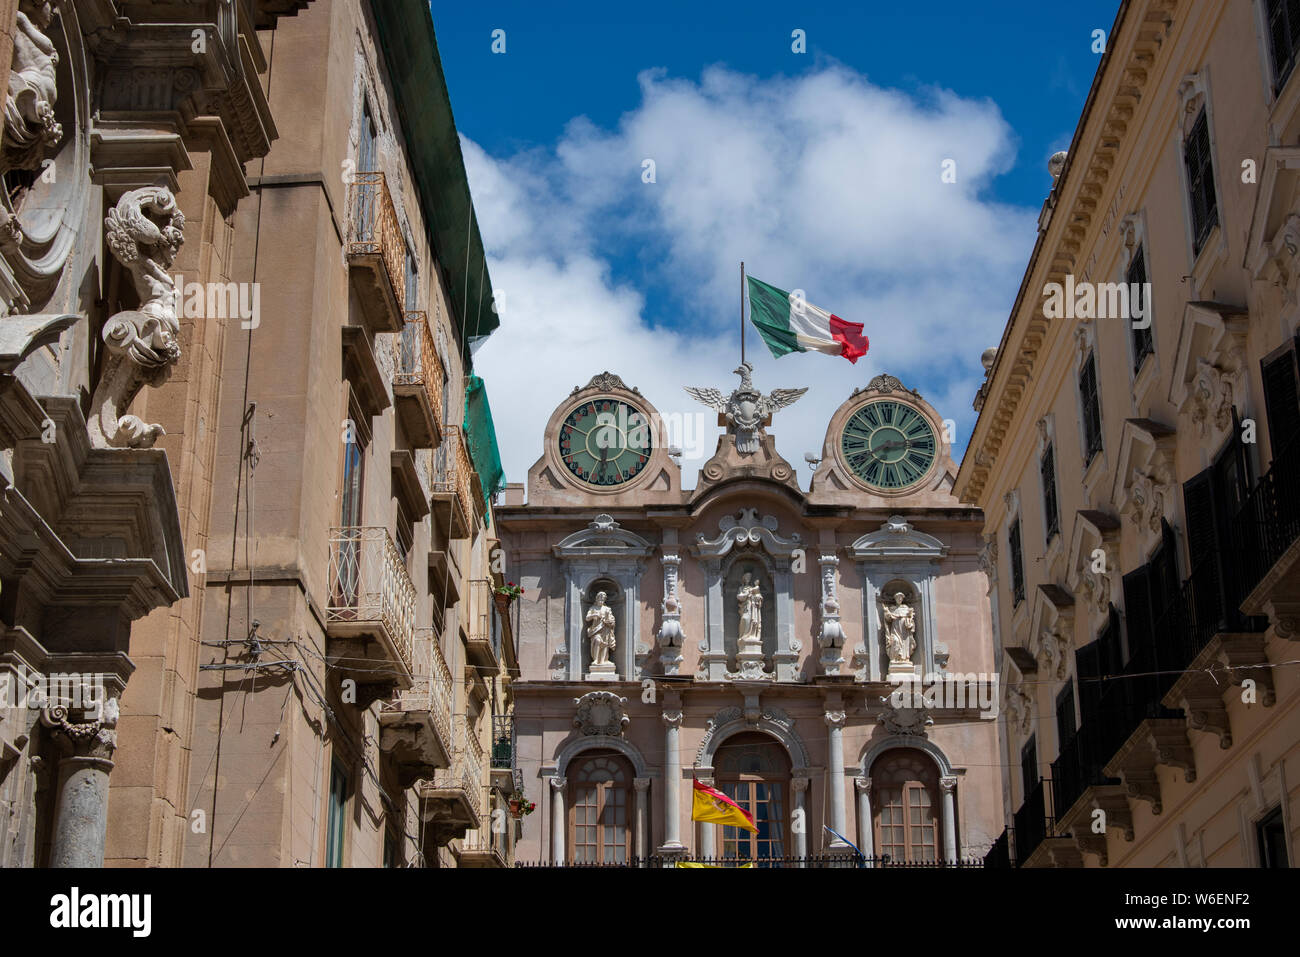 Italy, Sicily, Trapani. Palazzo Senatorio Trapani, Senate Hall or Palazzo Cavarretta. 15th century Baroque style twin clock tower. Stock Photo